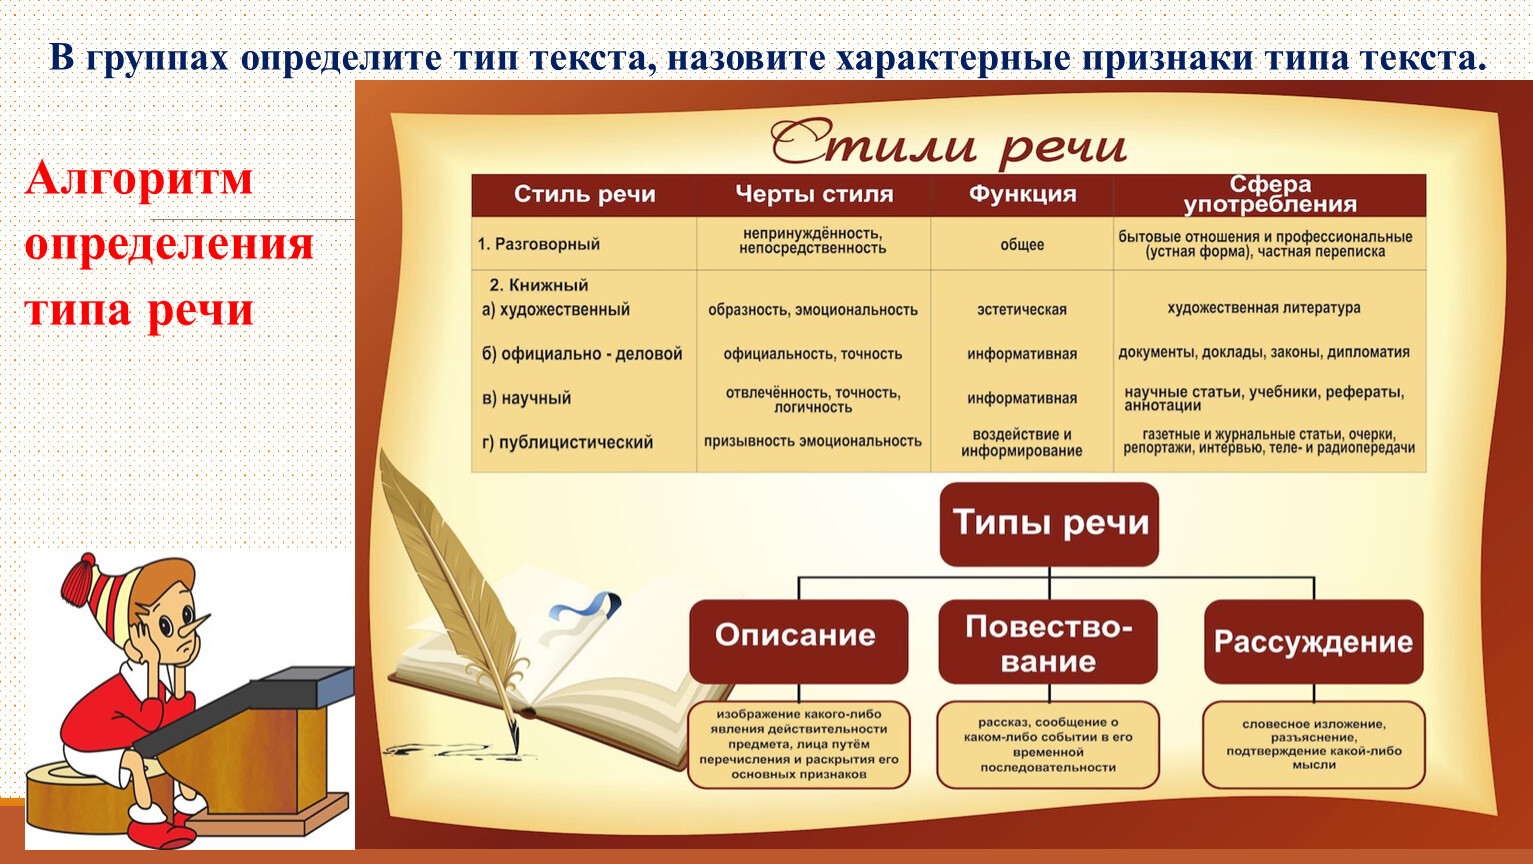 Стили речи какие бывают в русском языке. Стили и типы речи. Виды стилей речи текста. Типы и стили текста в русском языке. Определить стиль и Тип речи текста.